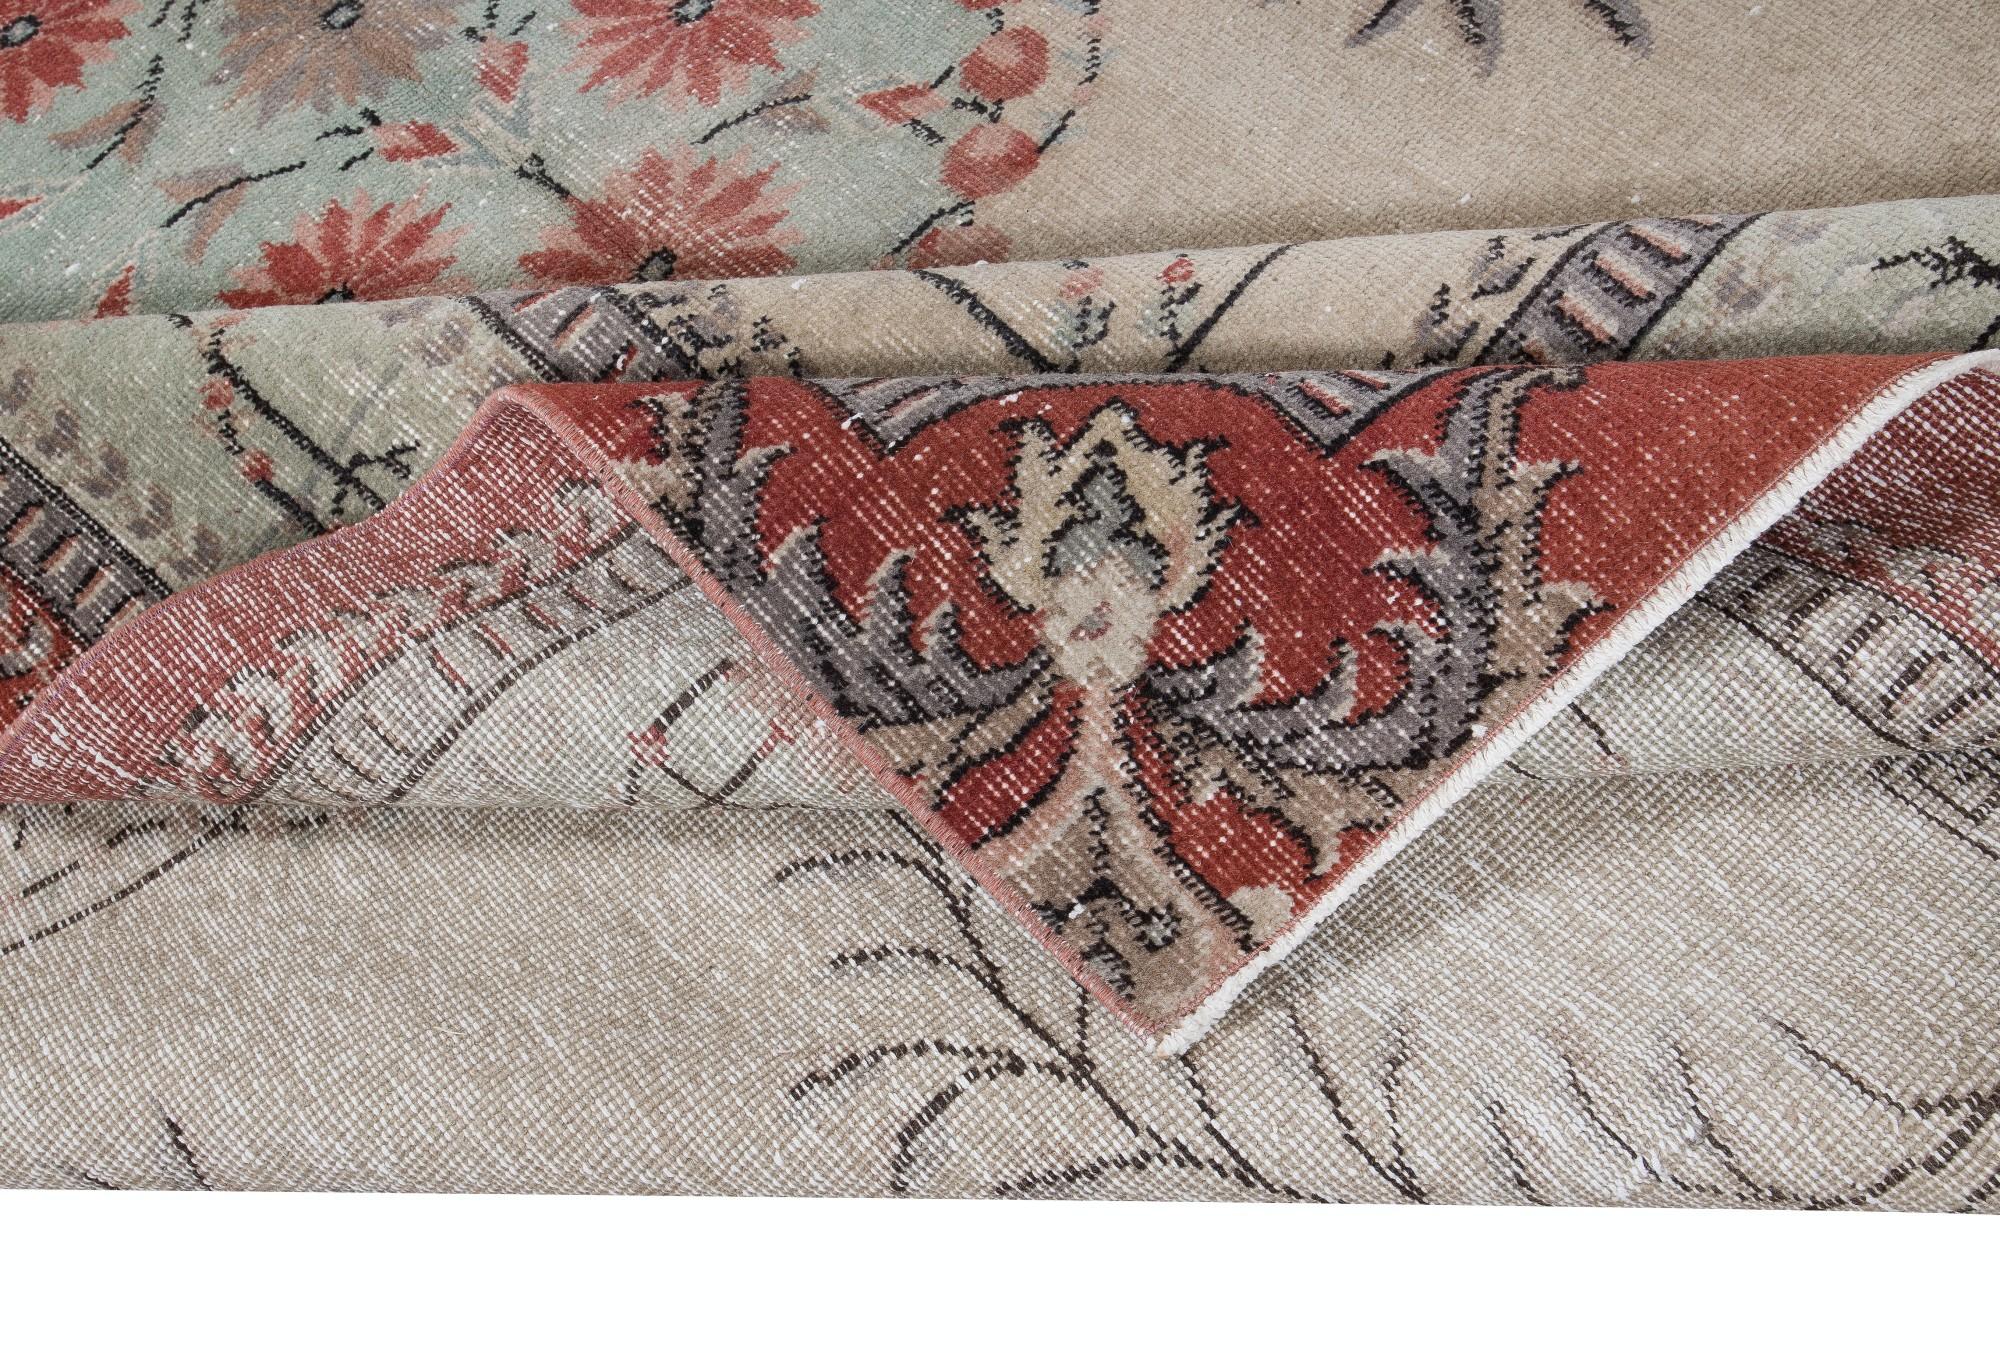 Industrial 6.2x9.6 Ft European Design Handmade Rug. Vintage Deco Carpet, Beige, Red & Green For Sale